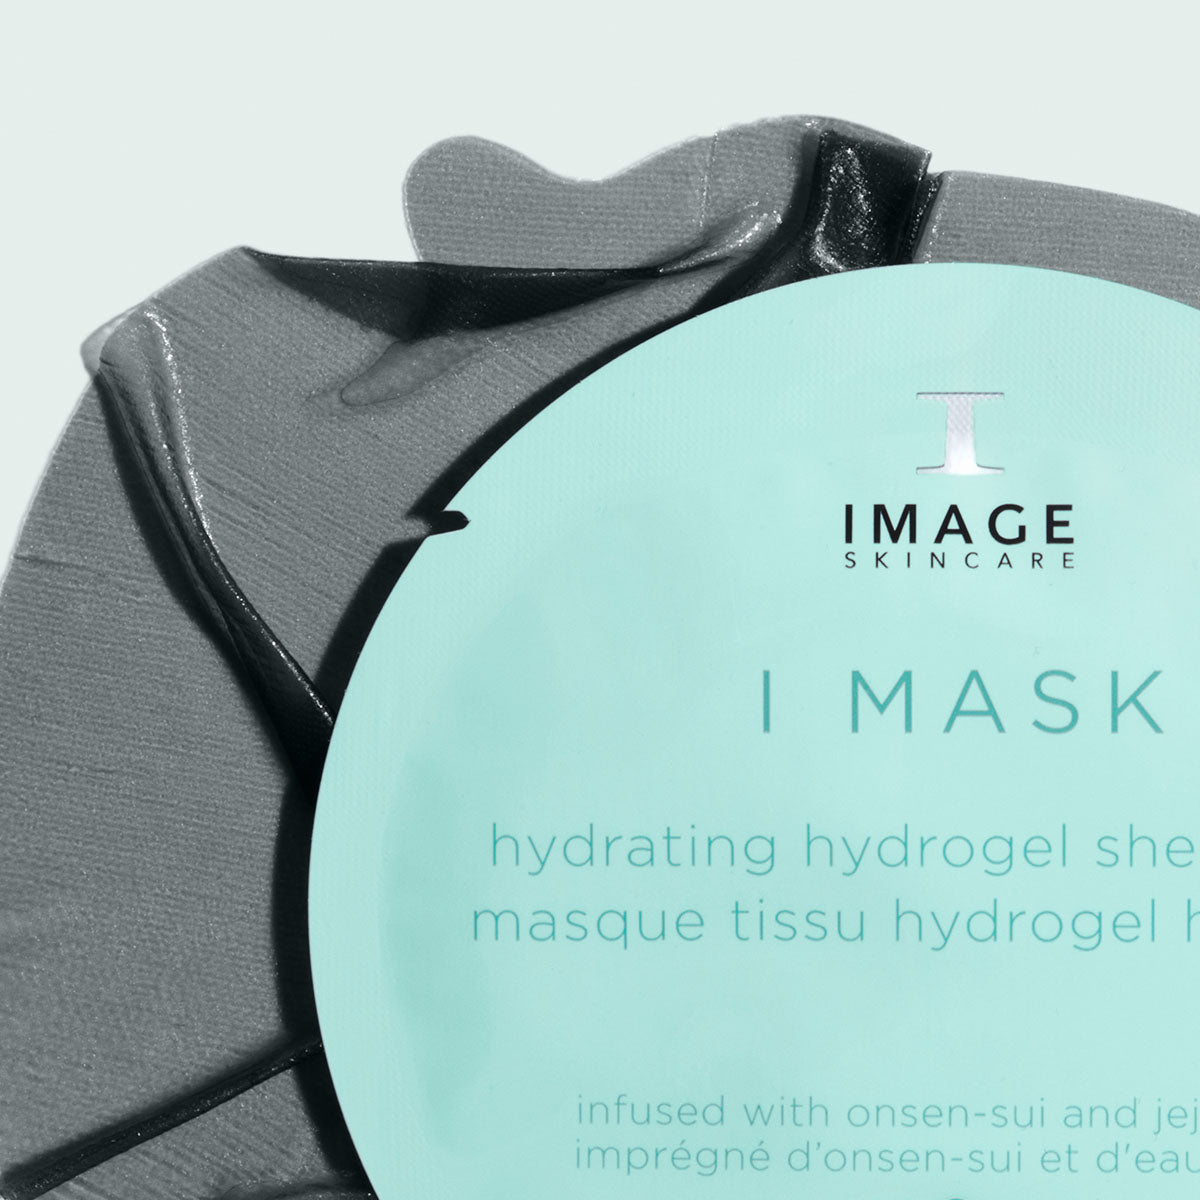 I MASK hydrating hydrogel sheet mask (5 pack) | IMAGE Skincare